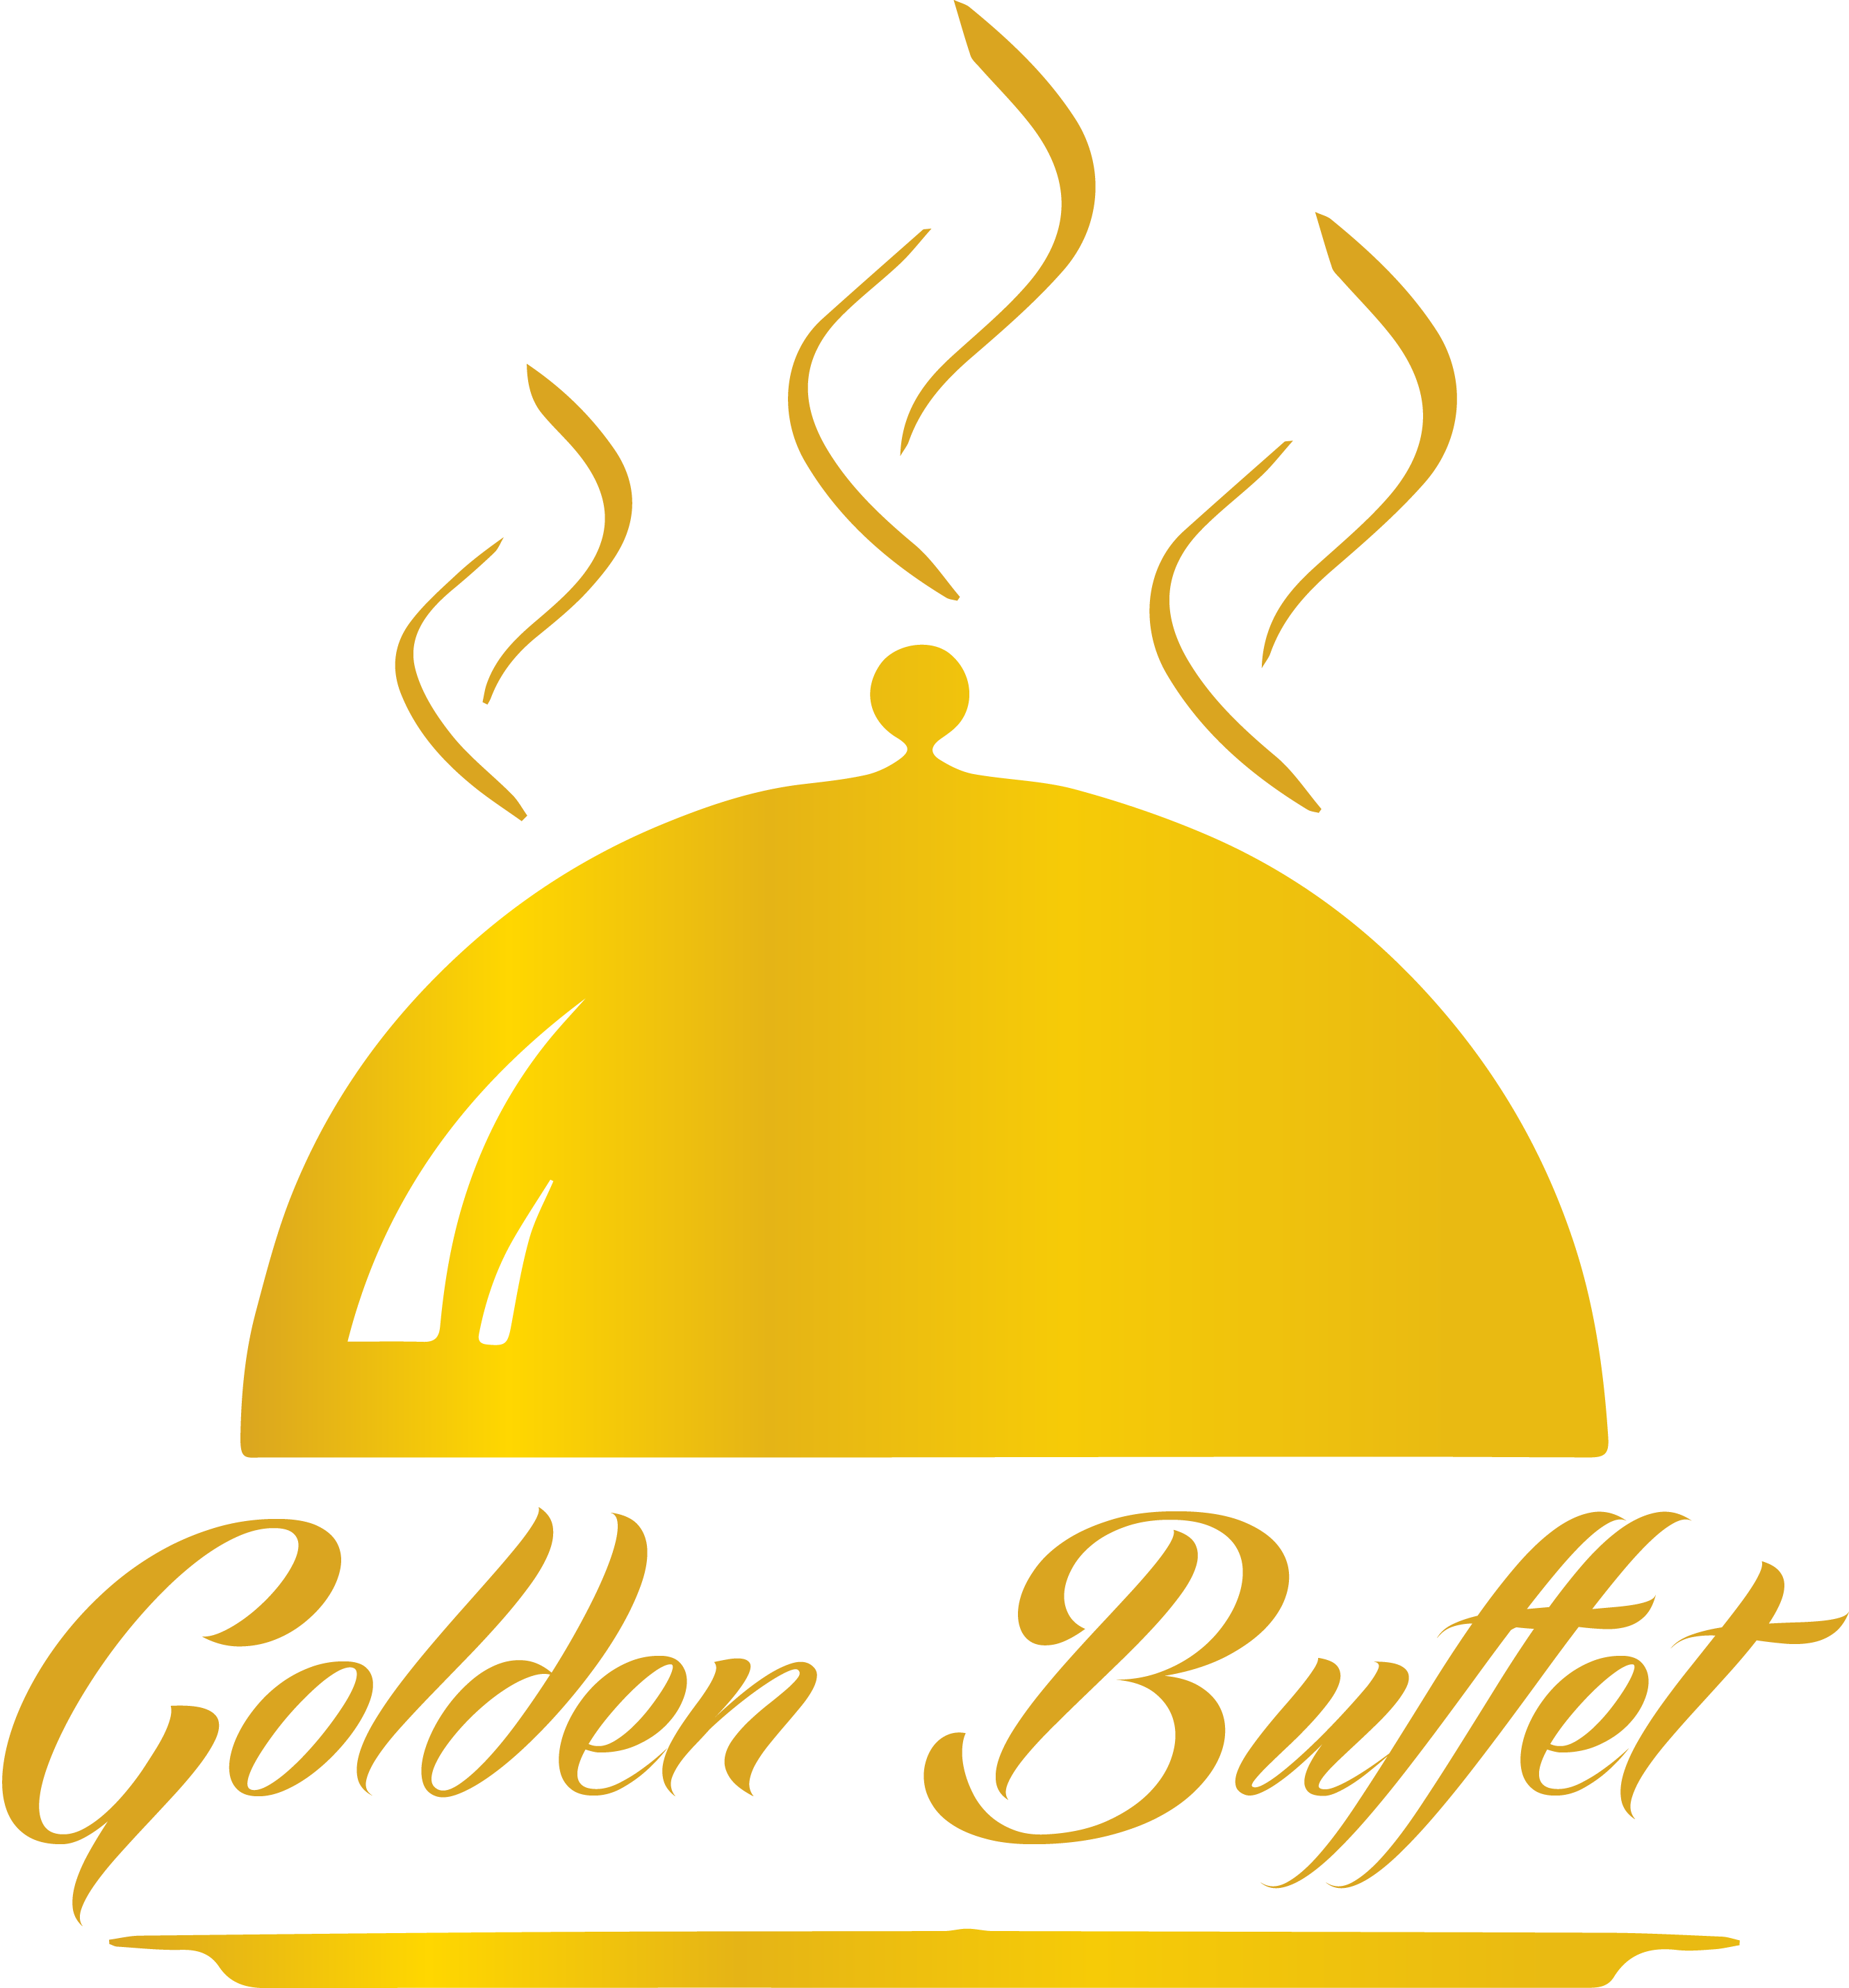 Bffet Logo - About – Golden Buffet